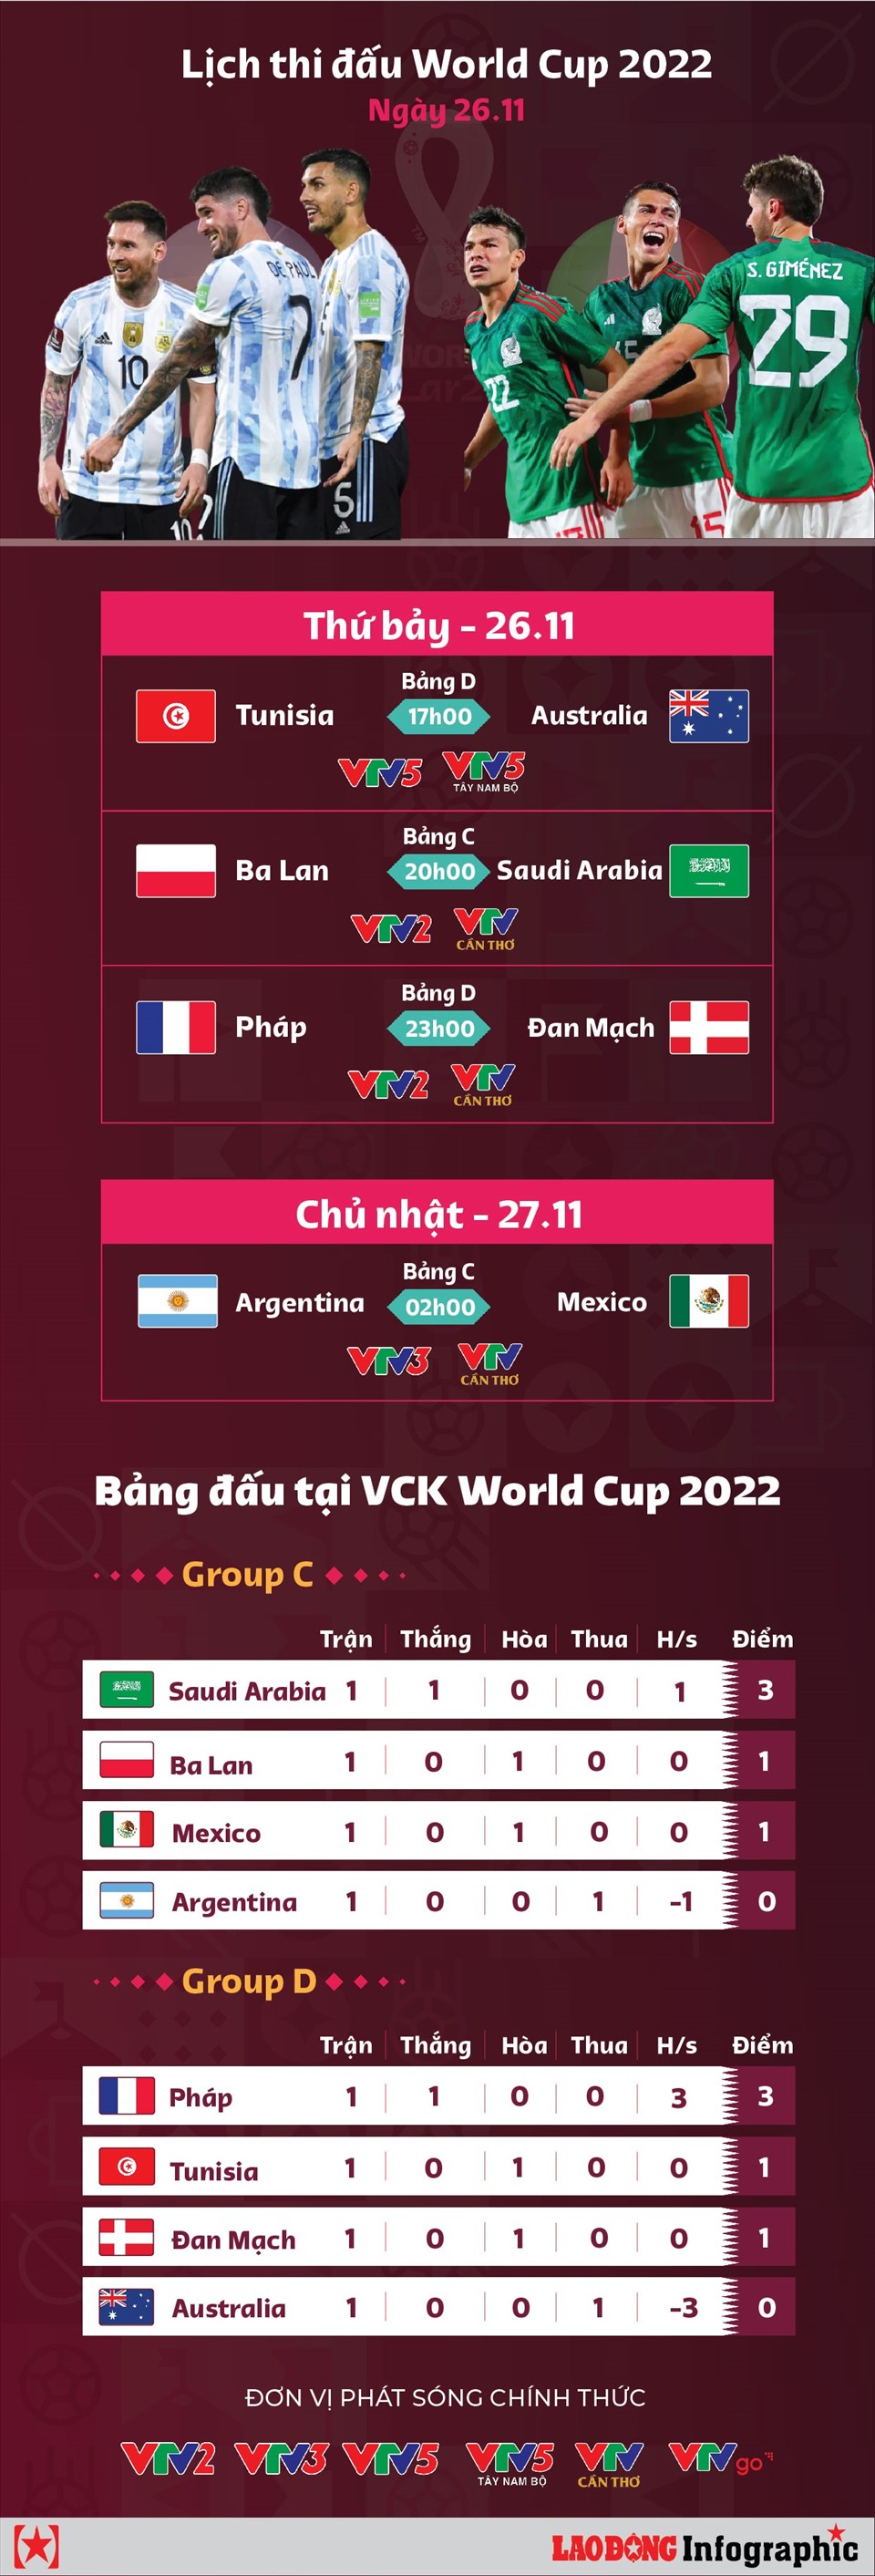 Lịch truyền hình trực tiếp World Cup 2022 ngày 26.11.